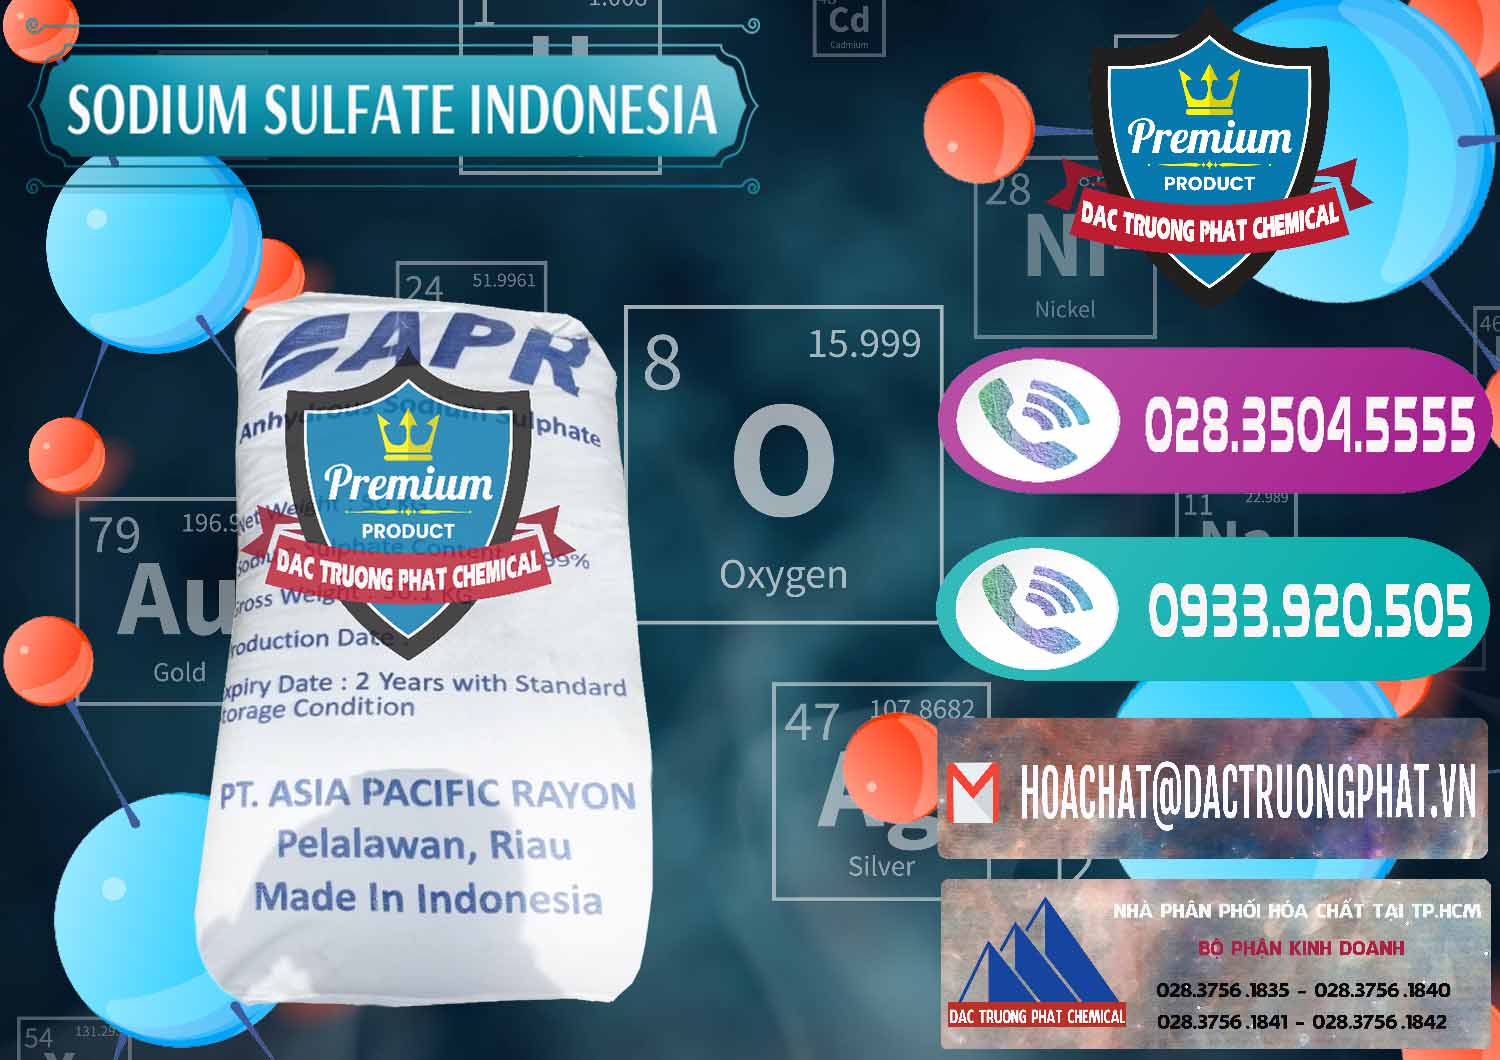 Chuyên bán ( phân phối ) Sodium Sulphate - Muối Sunfat Na2SO4 APR Indonesia - 0460 - Cty chuyên nhập khẩu và cung cấp hóa chất tại TP.HCM - hoachatxulynuoc.com